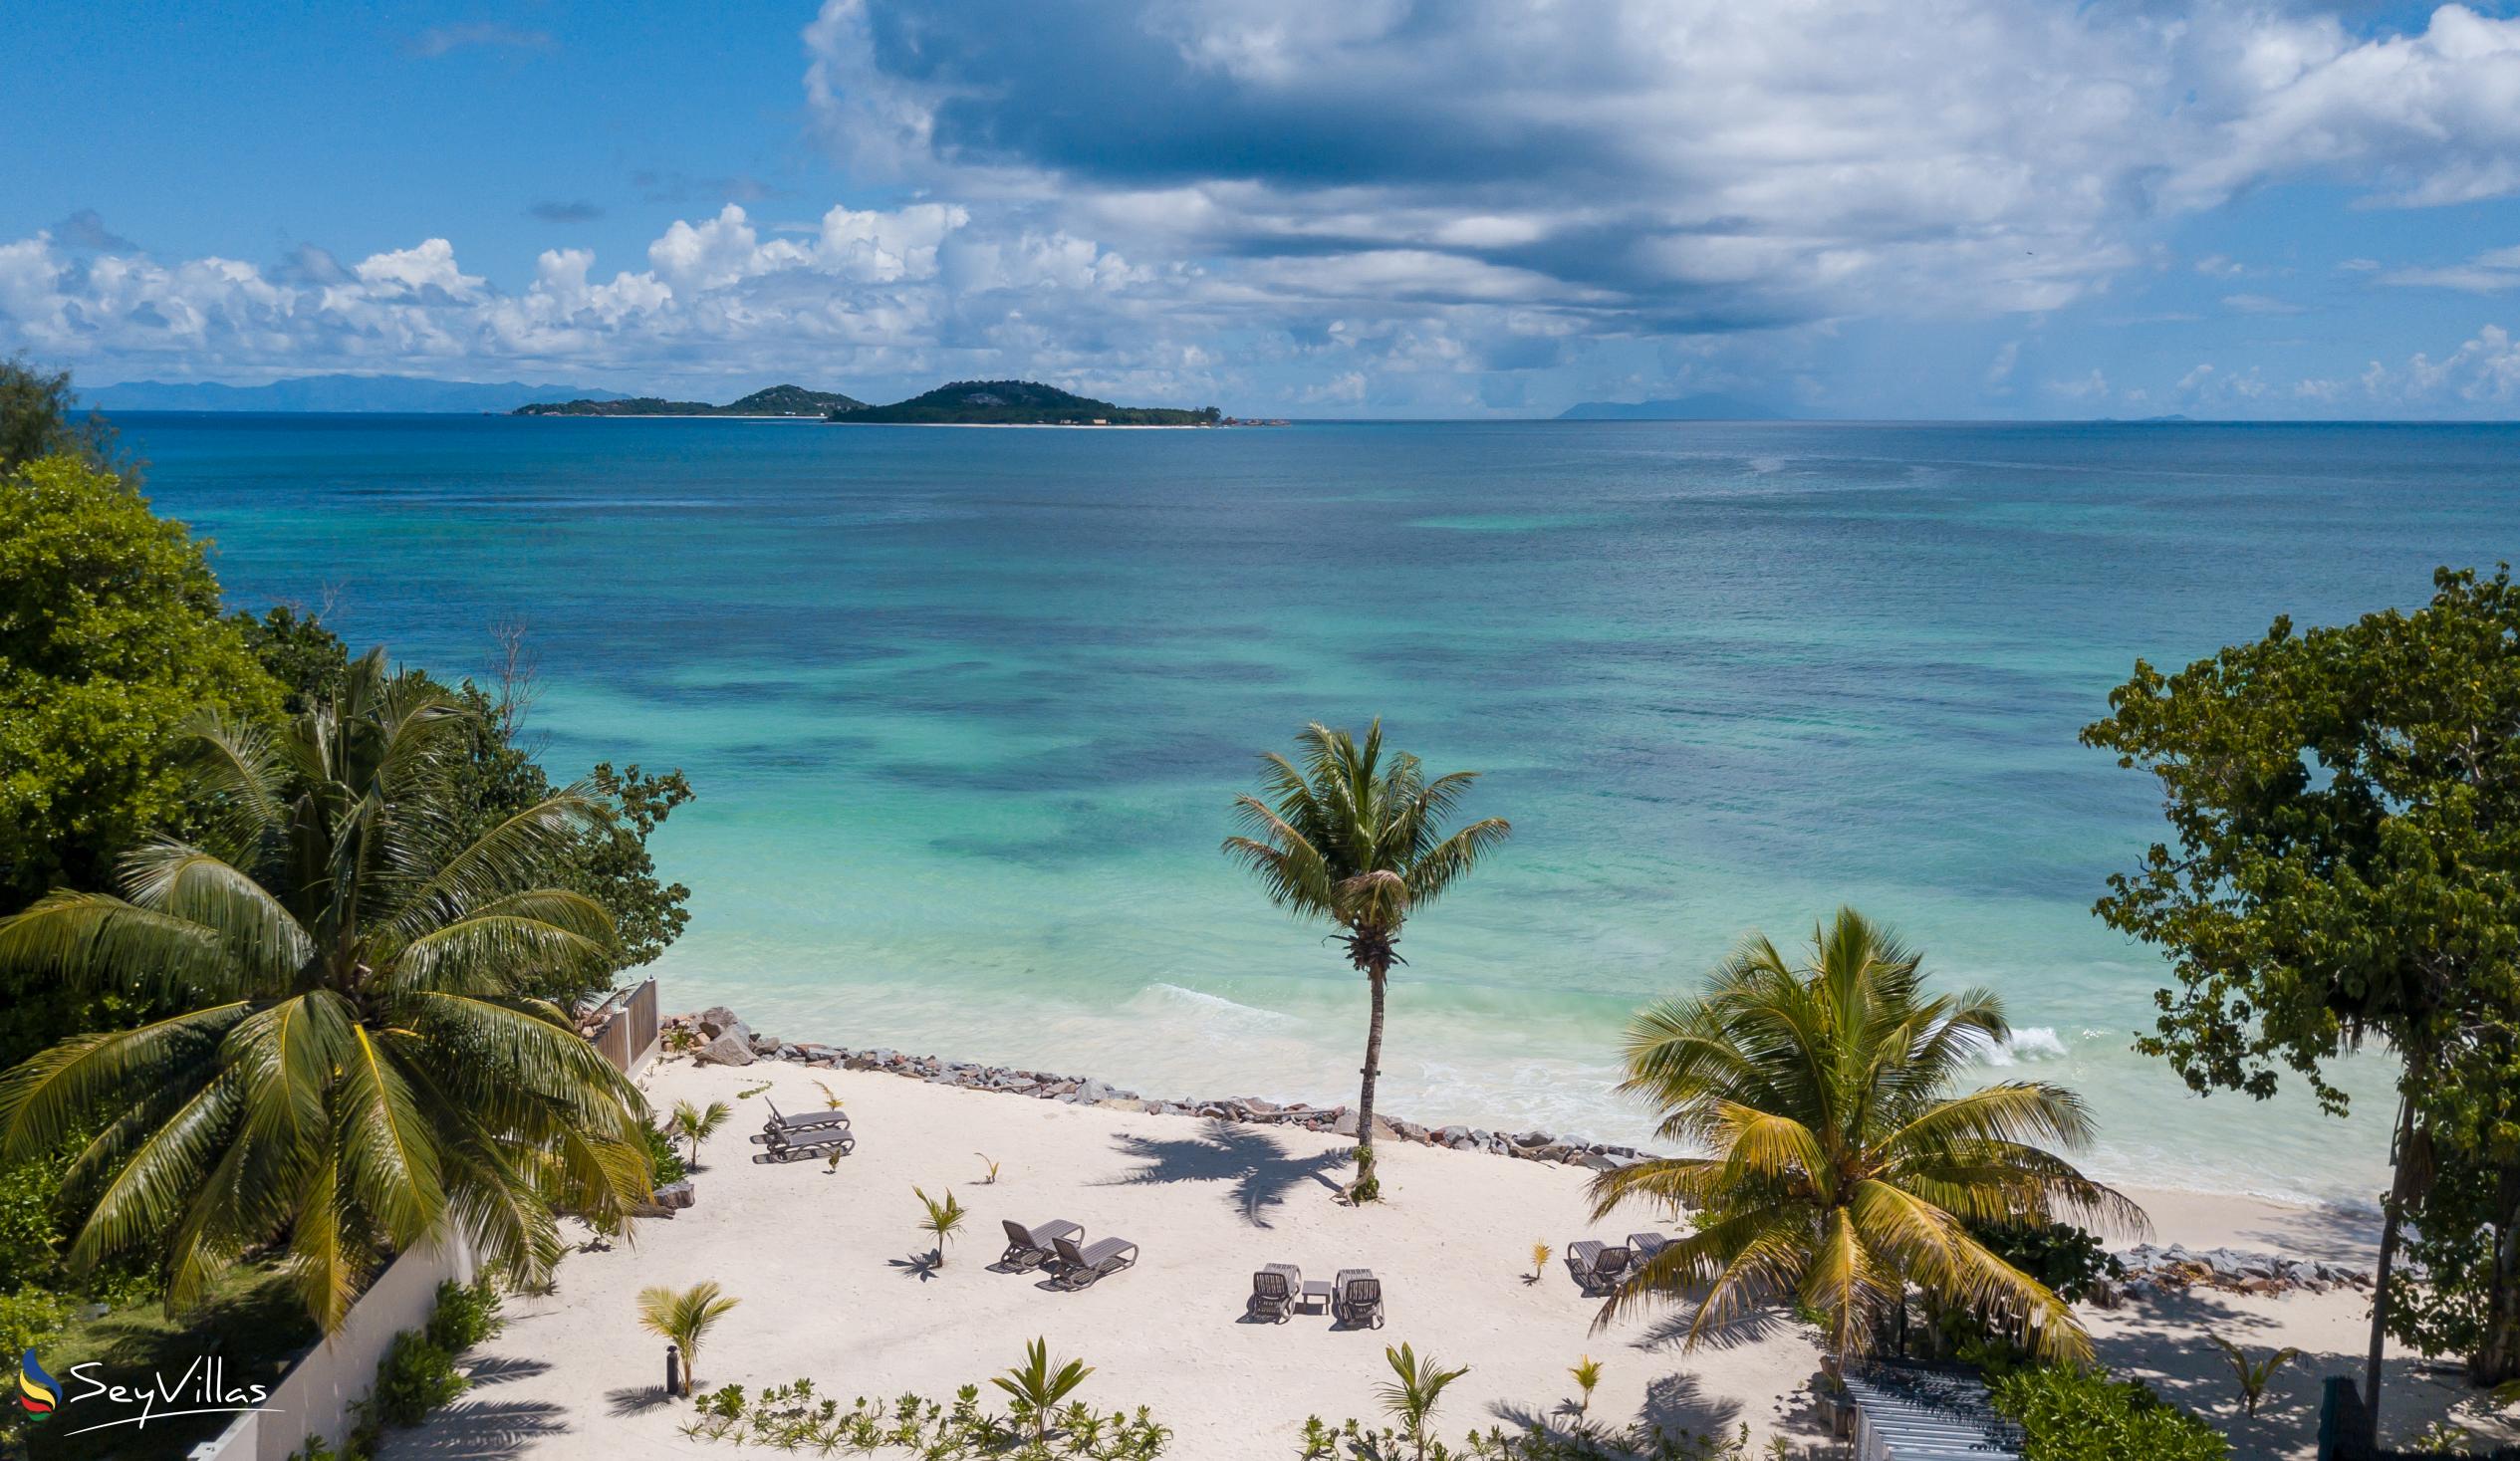 Foto 35: Villas Coco Beach - Location - Praslin (Seychelles)